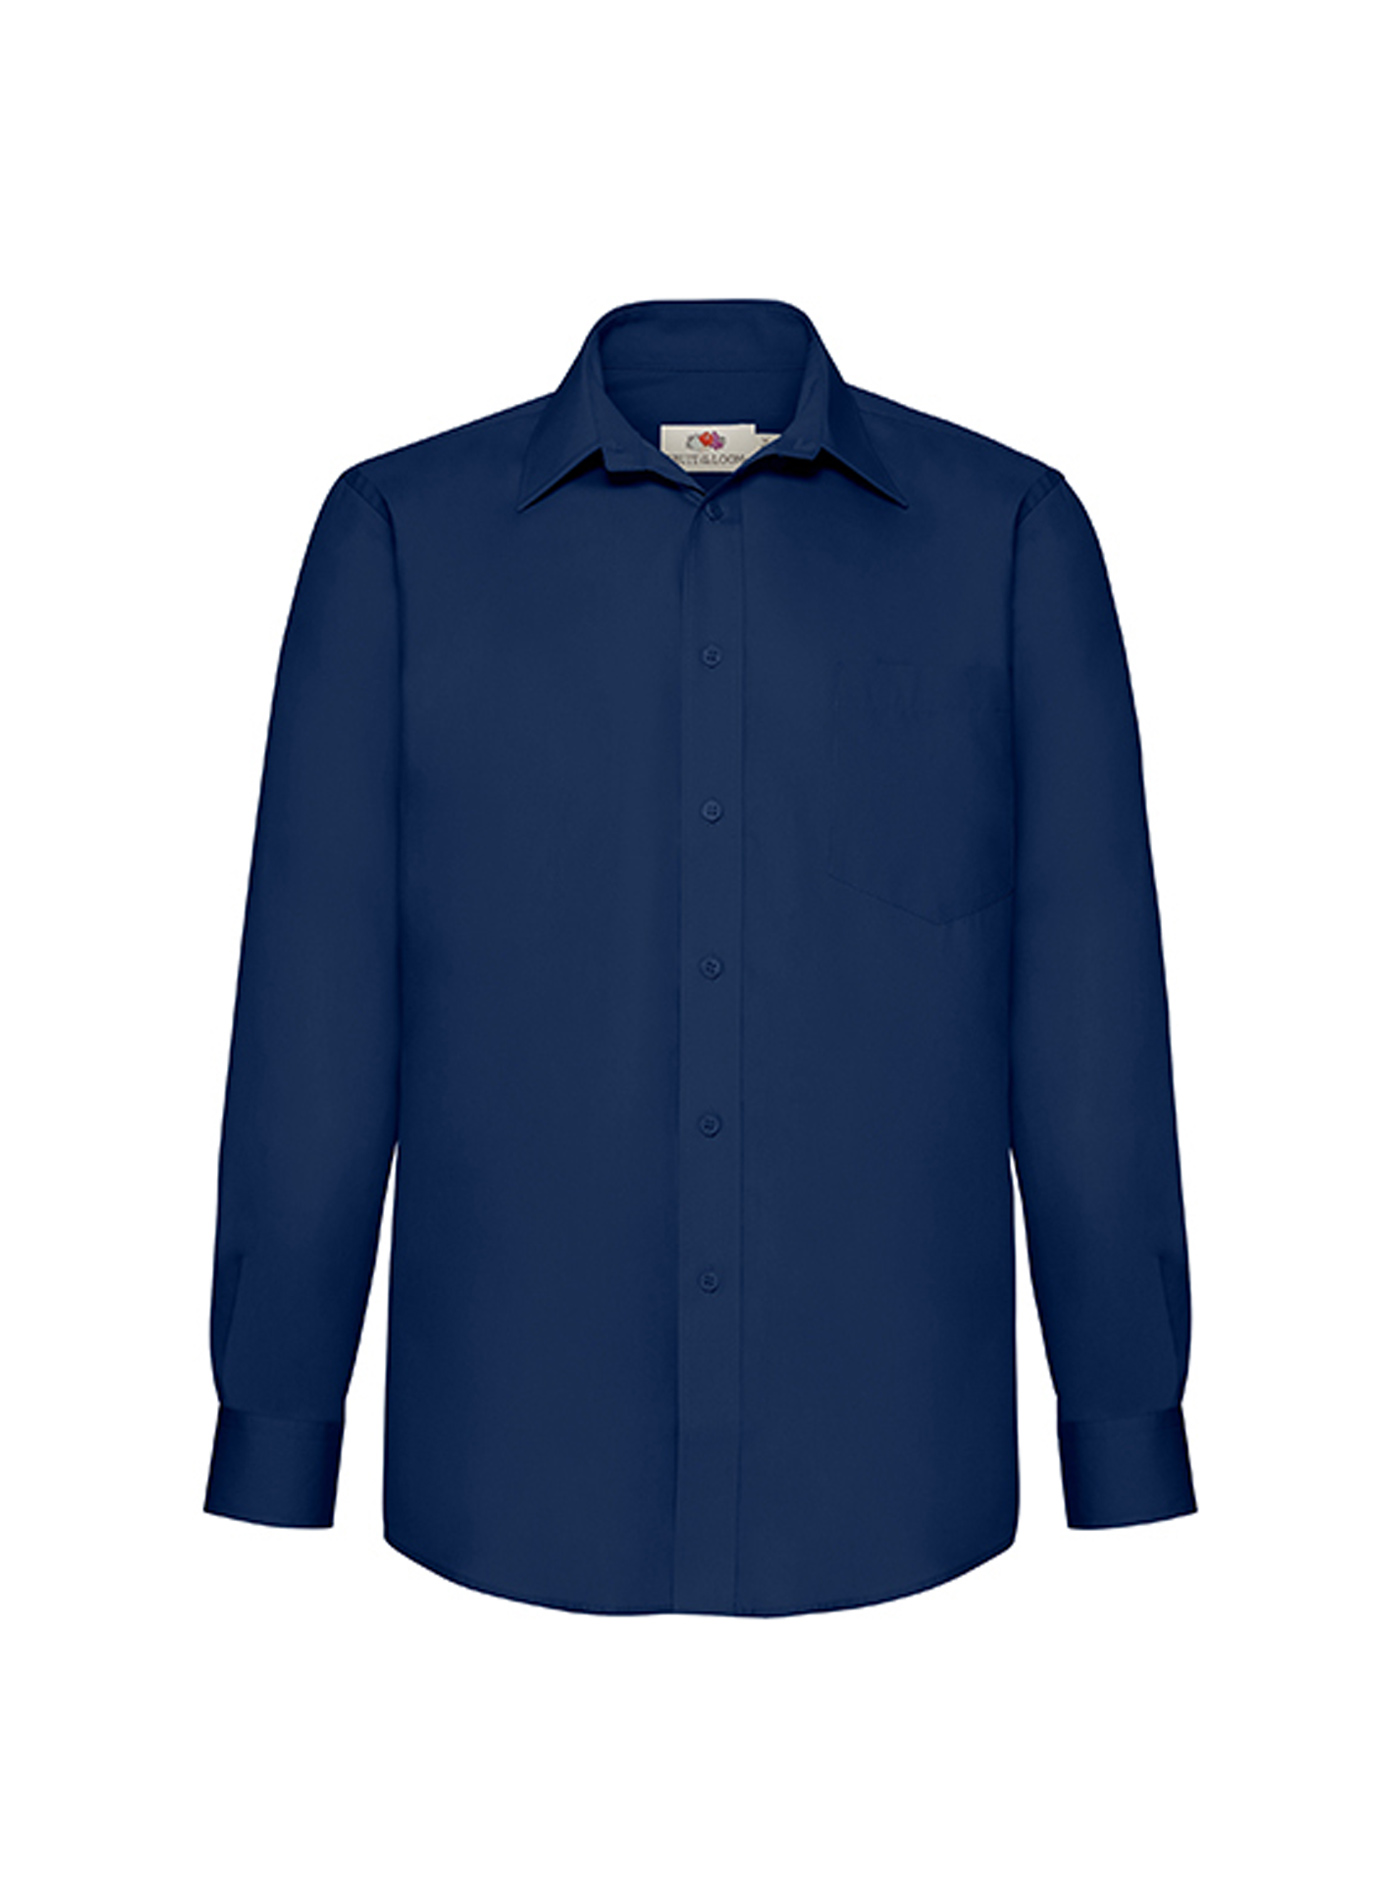 Pánská popelínová košile s dlouhým rukávem Fruit of the Loom - Námořnická modrá S